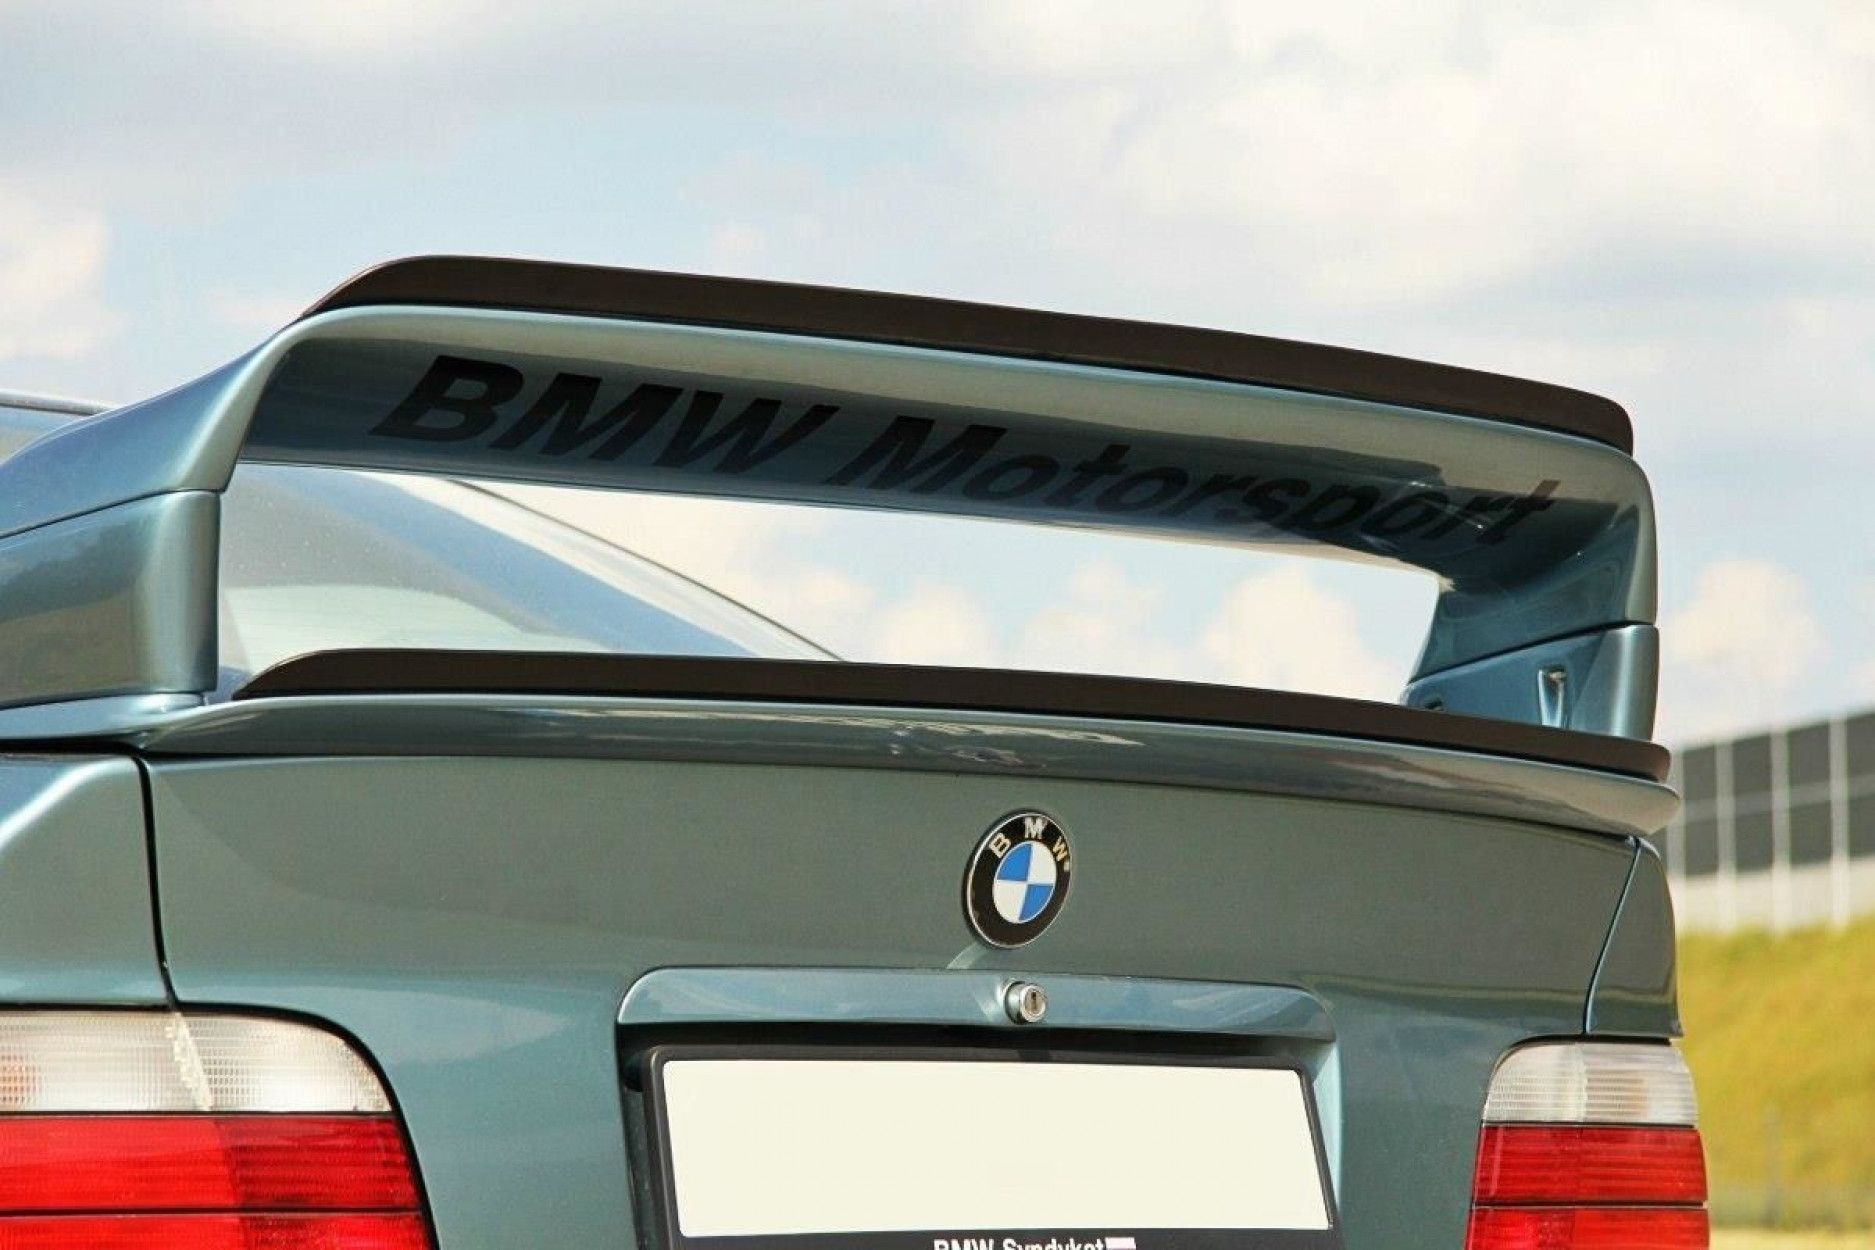 Спойлер пример. BMW e36 спойлер. BMW e36 gt спойлер. БМВ е36 крышка багажника спойлер. Спойлер на крышку багажника БМВ е36 седан.